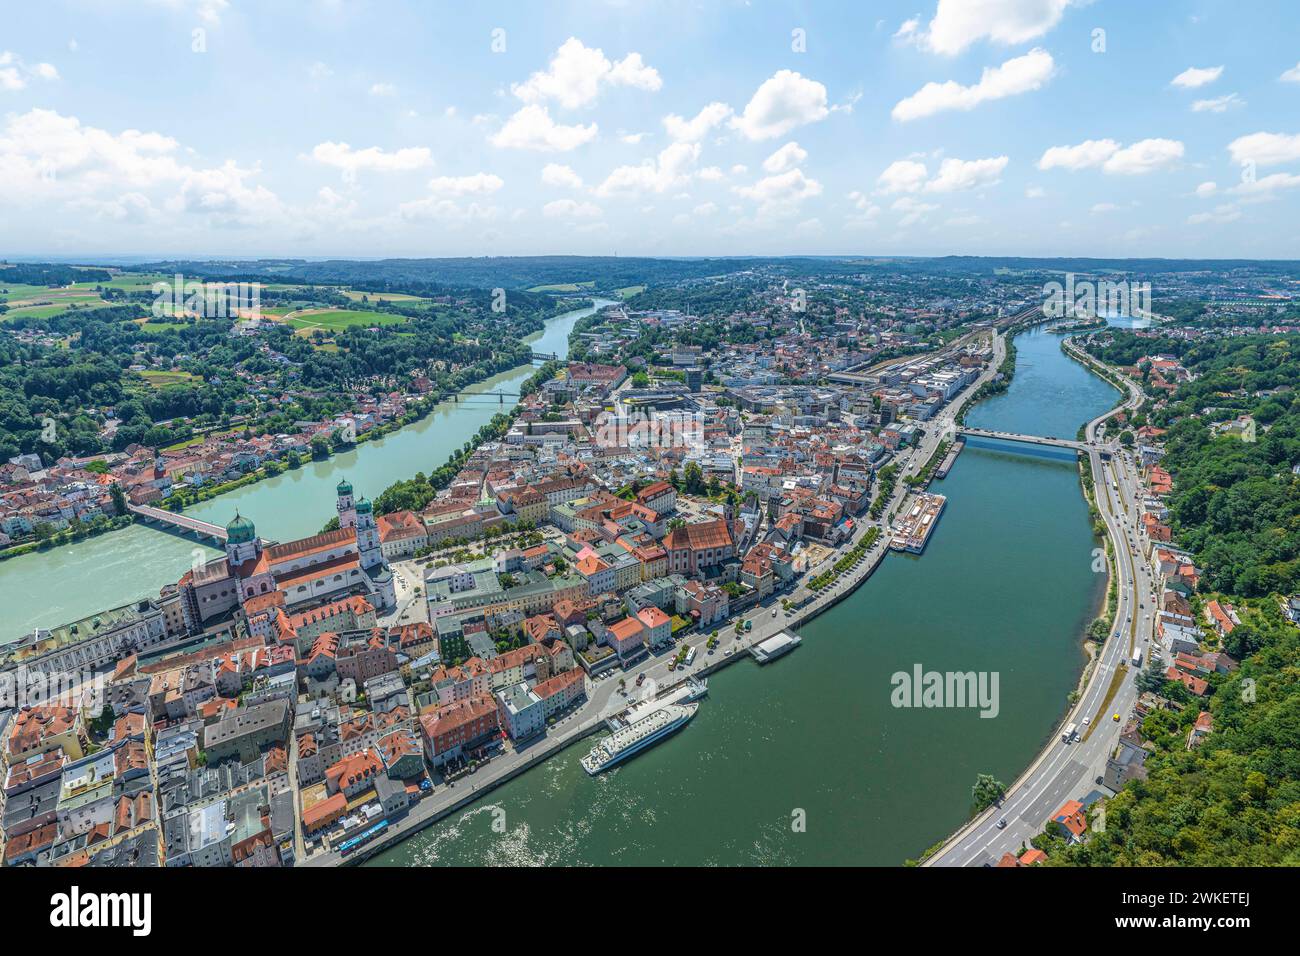 Die Dreiflüssestadt Passau am Zusammenfluß von Donau, Inn und Ilz im Luftbild Ausblick auf die Universitätsstadt Passau in Niederbayern Passau Georgsb Stock Photo